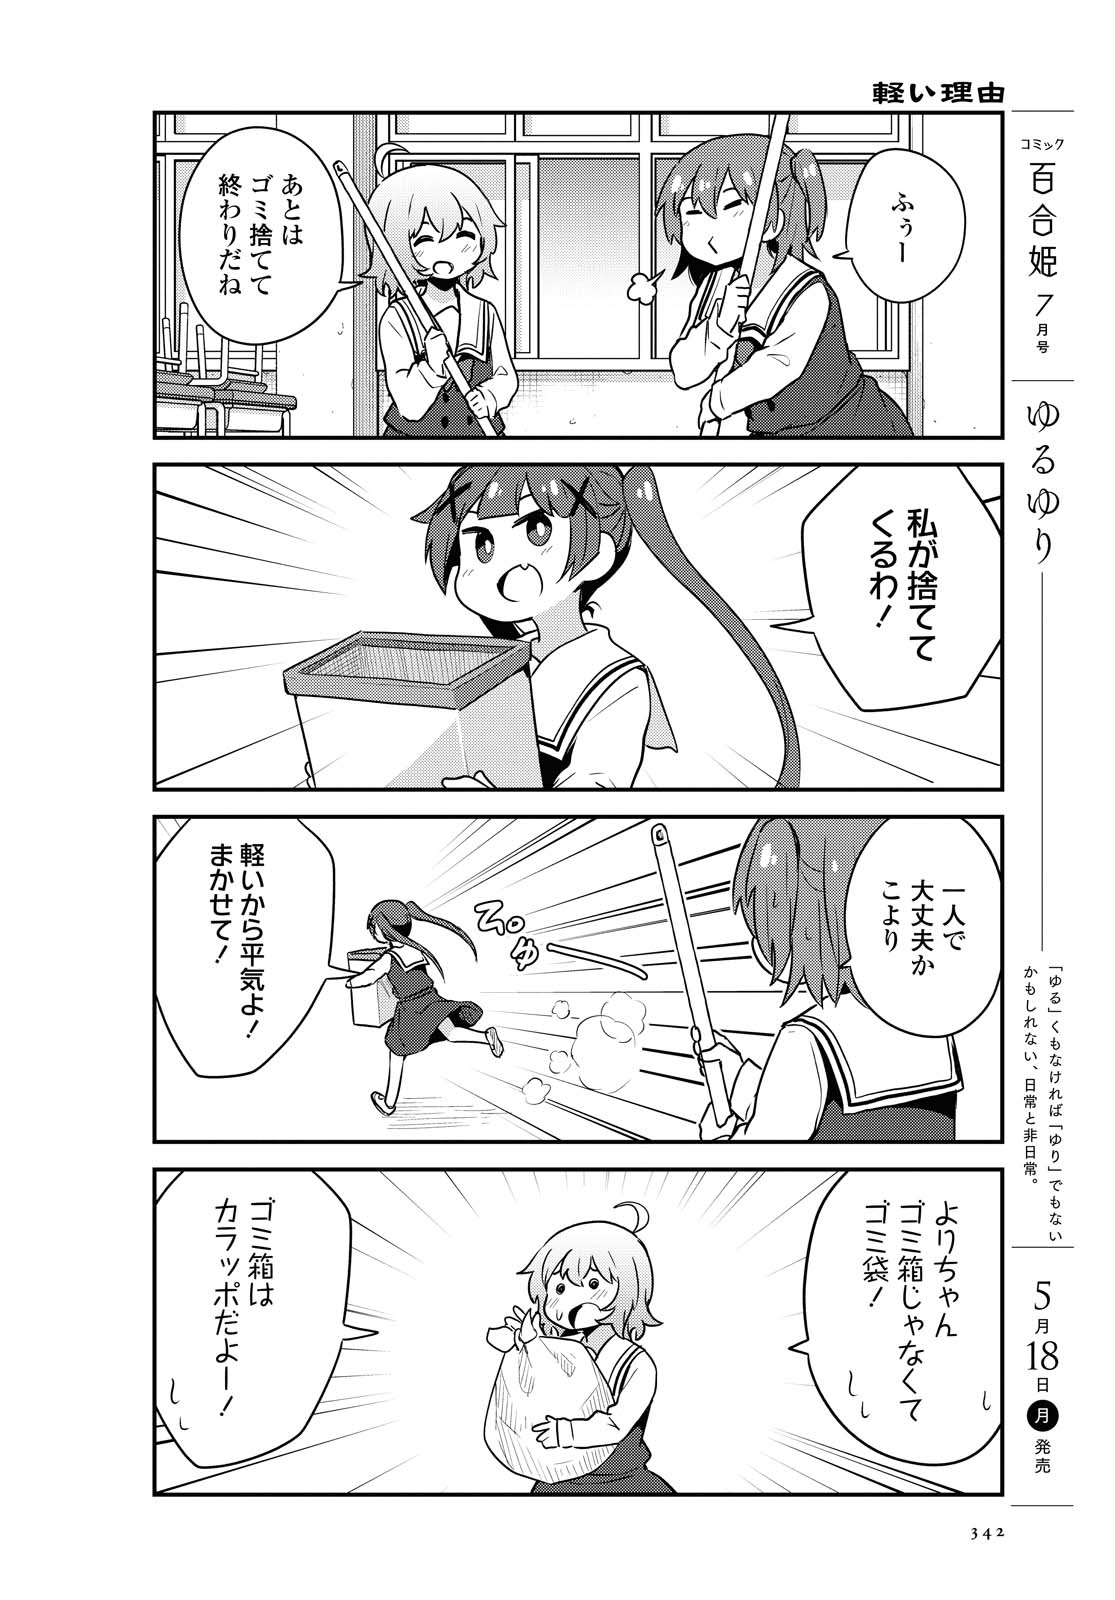 Watashi ni Tenshi ga Maiorita! - Chapter 64 - Page 4